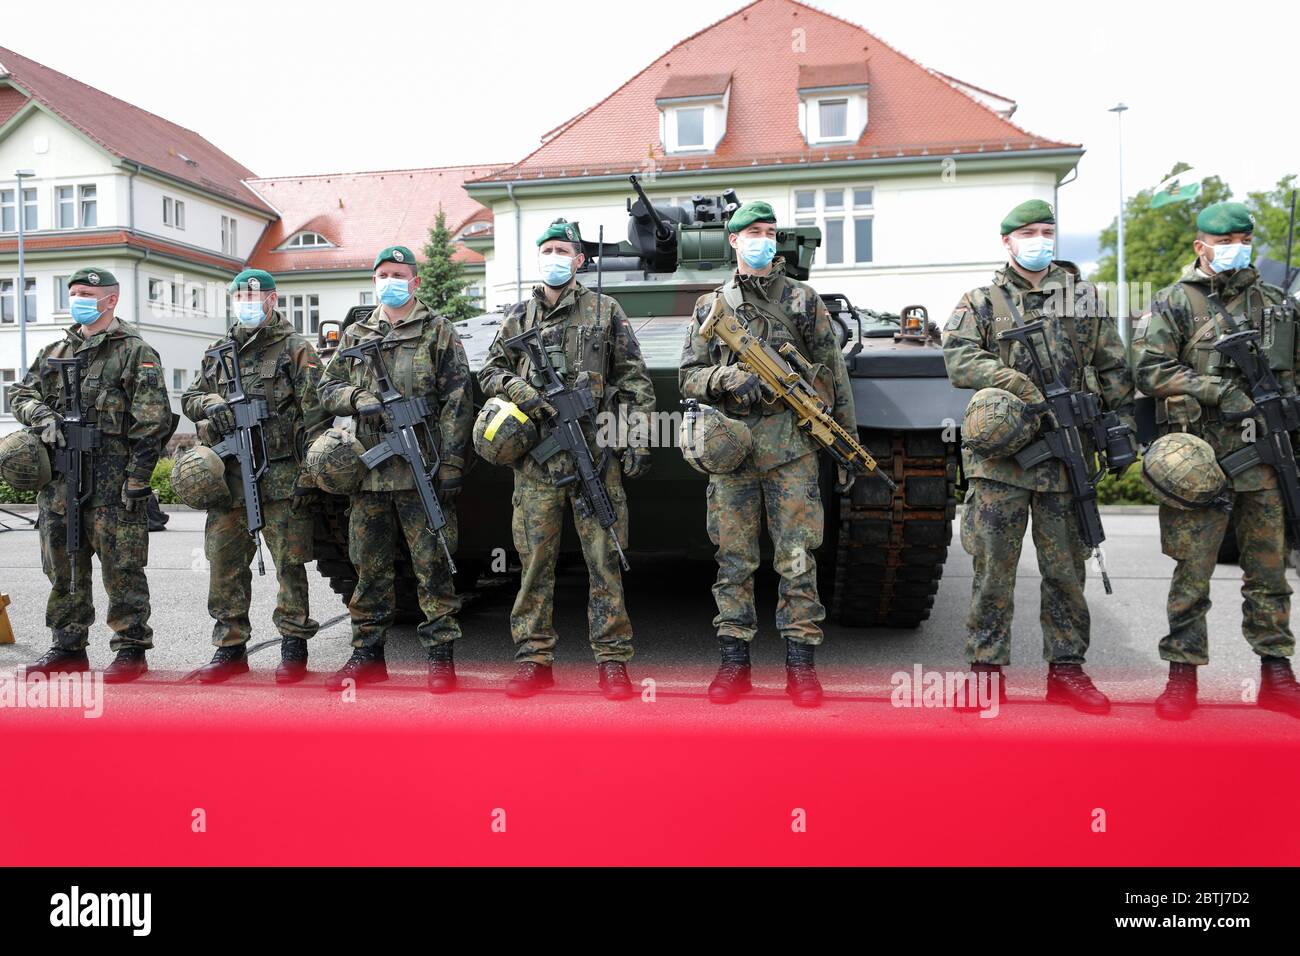 26 de mayo de 2020, Sajonia, Frankenberg: Soldados de la brigada Panzergrenadierbrigada 37 se encuentran frente a un vehículo blindado de combate de infantería 'frontera' para presentar el sistema de Gestión de Batalla. El sistema se ha introducido en la base de las Fuerzas Armadas desde principios de abril de 2020 y en el Ejército desde el 11 de mayo de 2020. Forma la columna vertebral de la digitalización del Bundeswehr y permite a las unidades desplegadas mostrar una situación compleja en las pantallas de los vehículos. Toda la información sobre la situación de las fuerzas propias y enemigas converge y se evalúa digitalmente y se muestra a los participantes Foto de stock